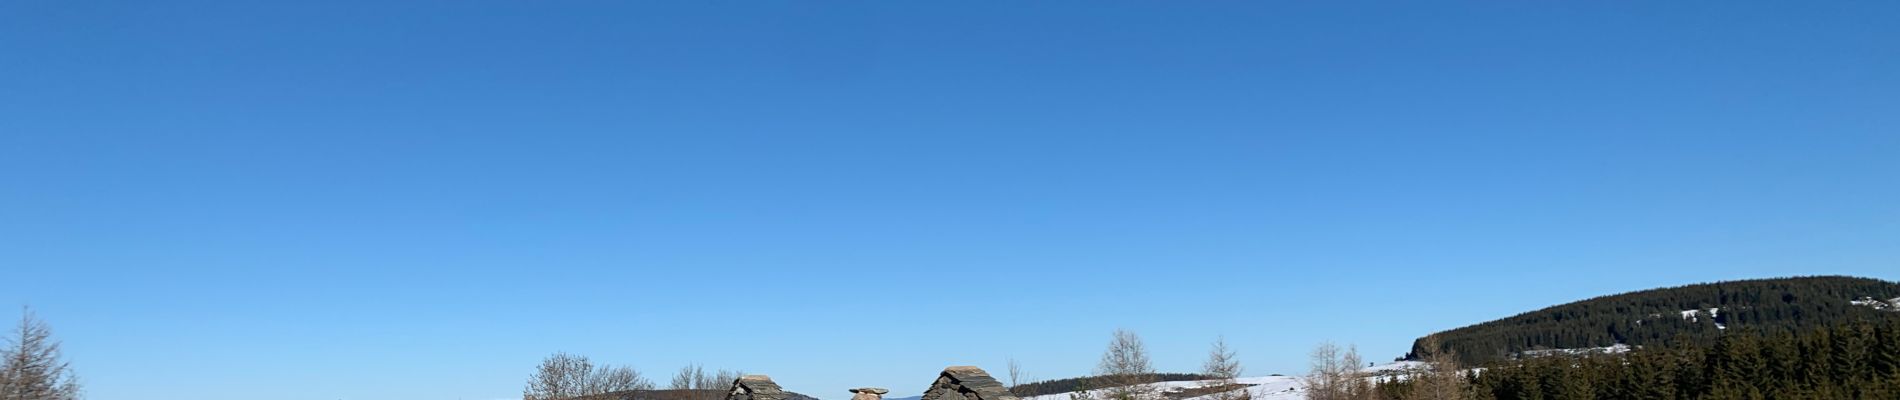 Randonnée Ski de randonnée Saint-Front - 2022 01 RANDONNÉE EN MÉZENC : descente vers Estaples puis La Croix Pecata, roche pointu, les dents du diable, traversée du Lignon. - Photo